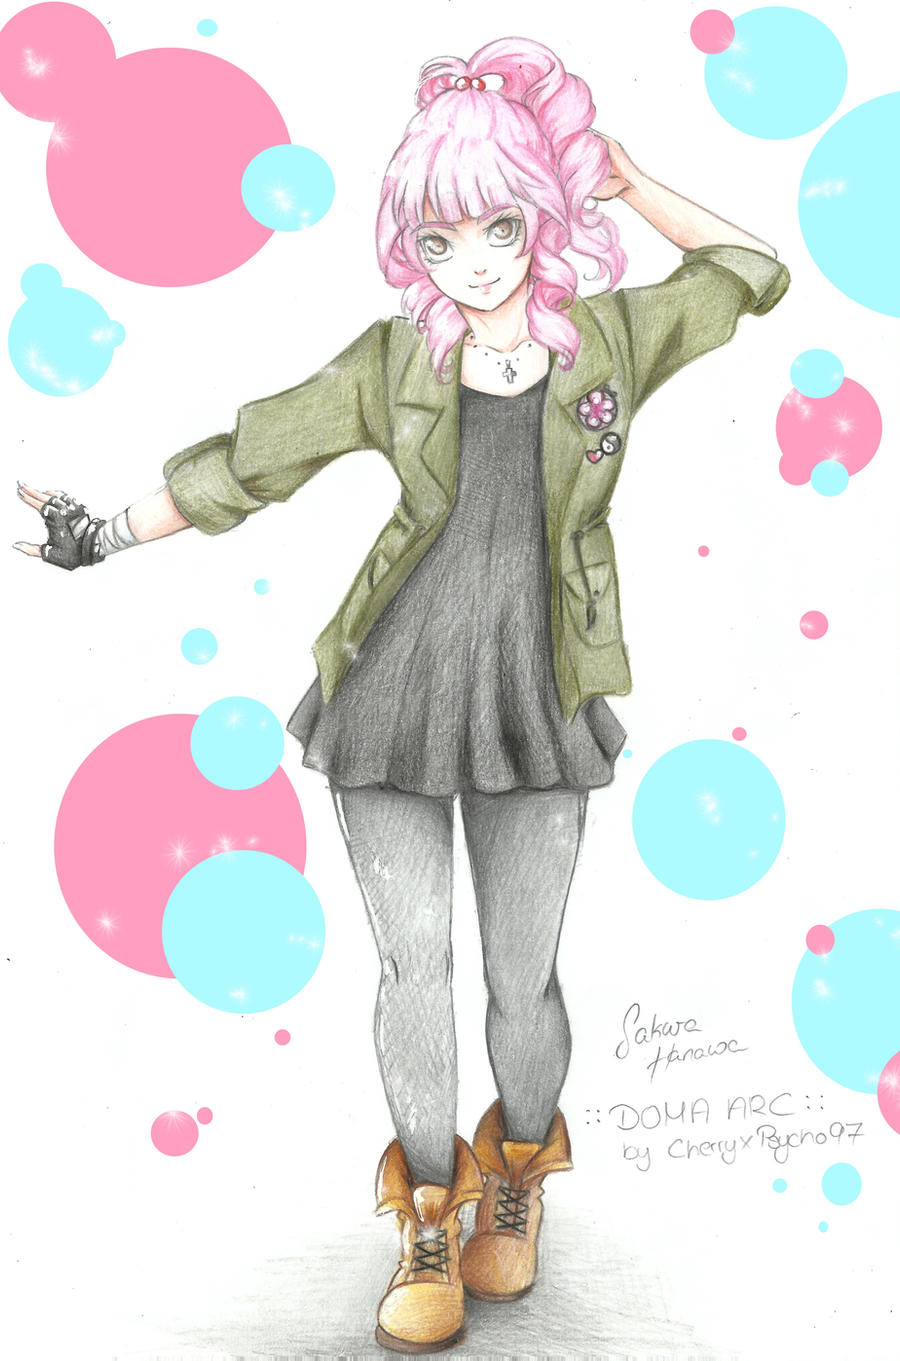 Sakura's DomaArc Outfit